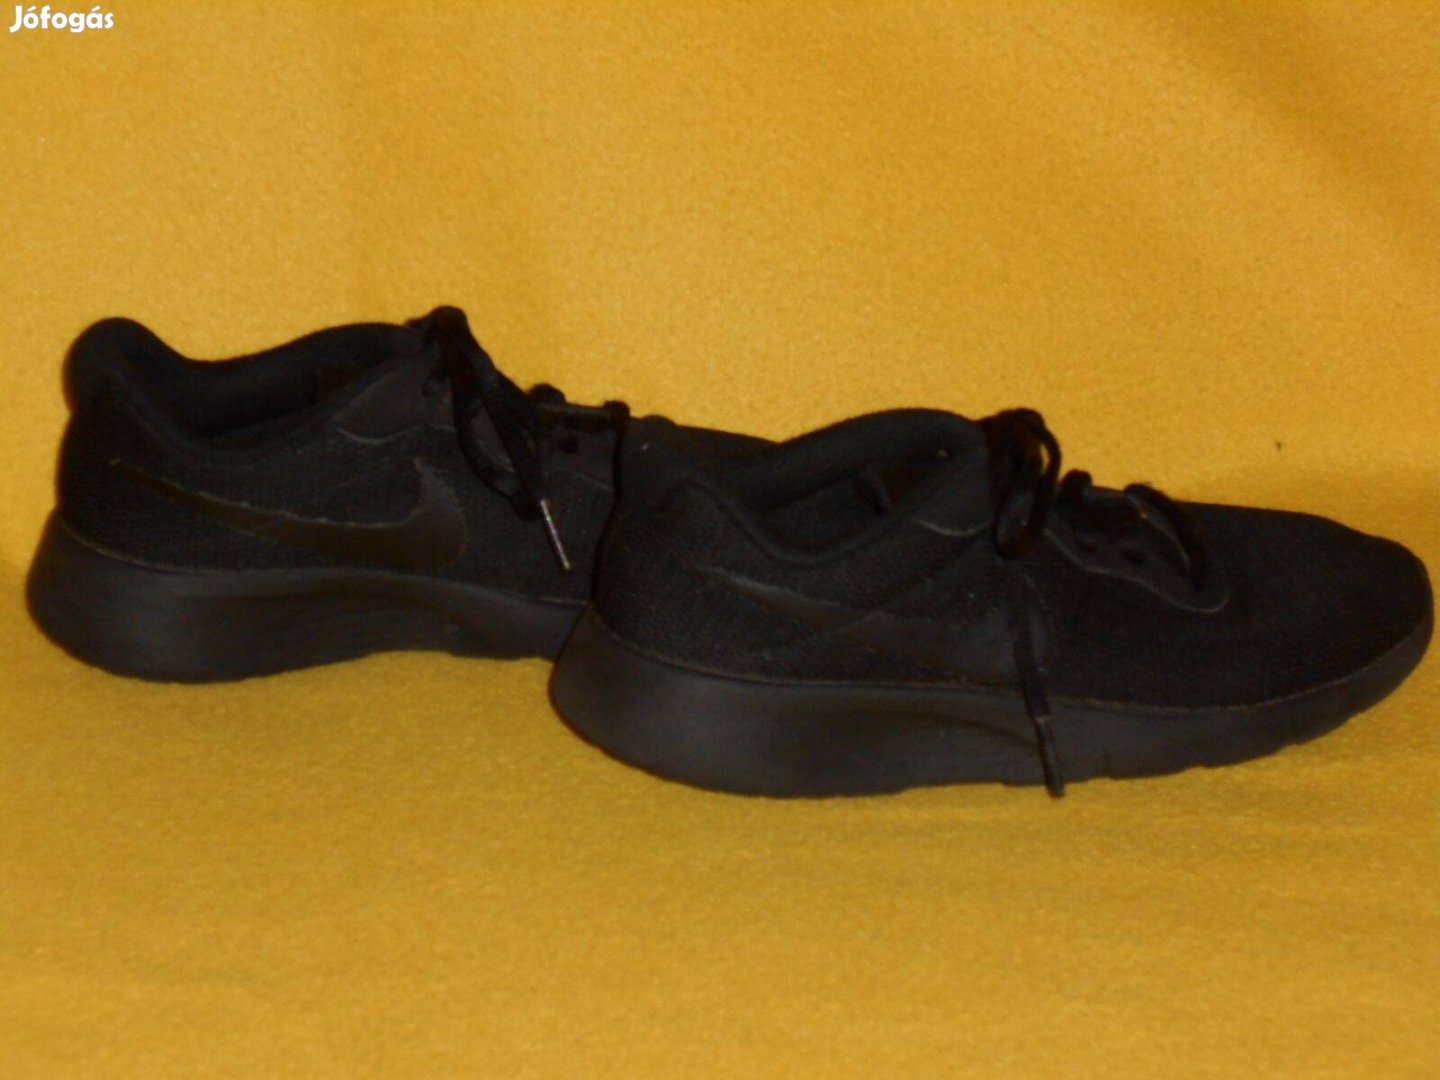 Fiú cipő, nagyon könnyű, szép fekete. 36 - os. Nike márka